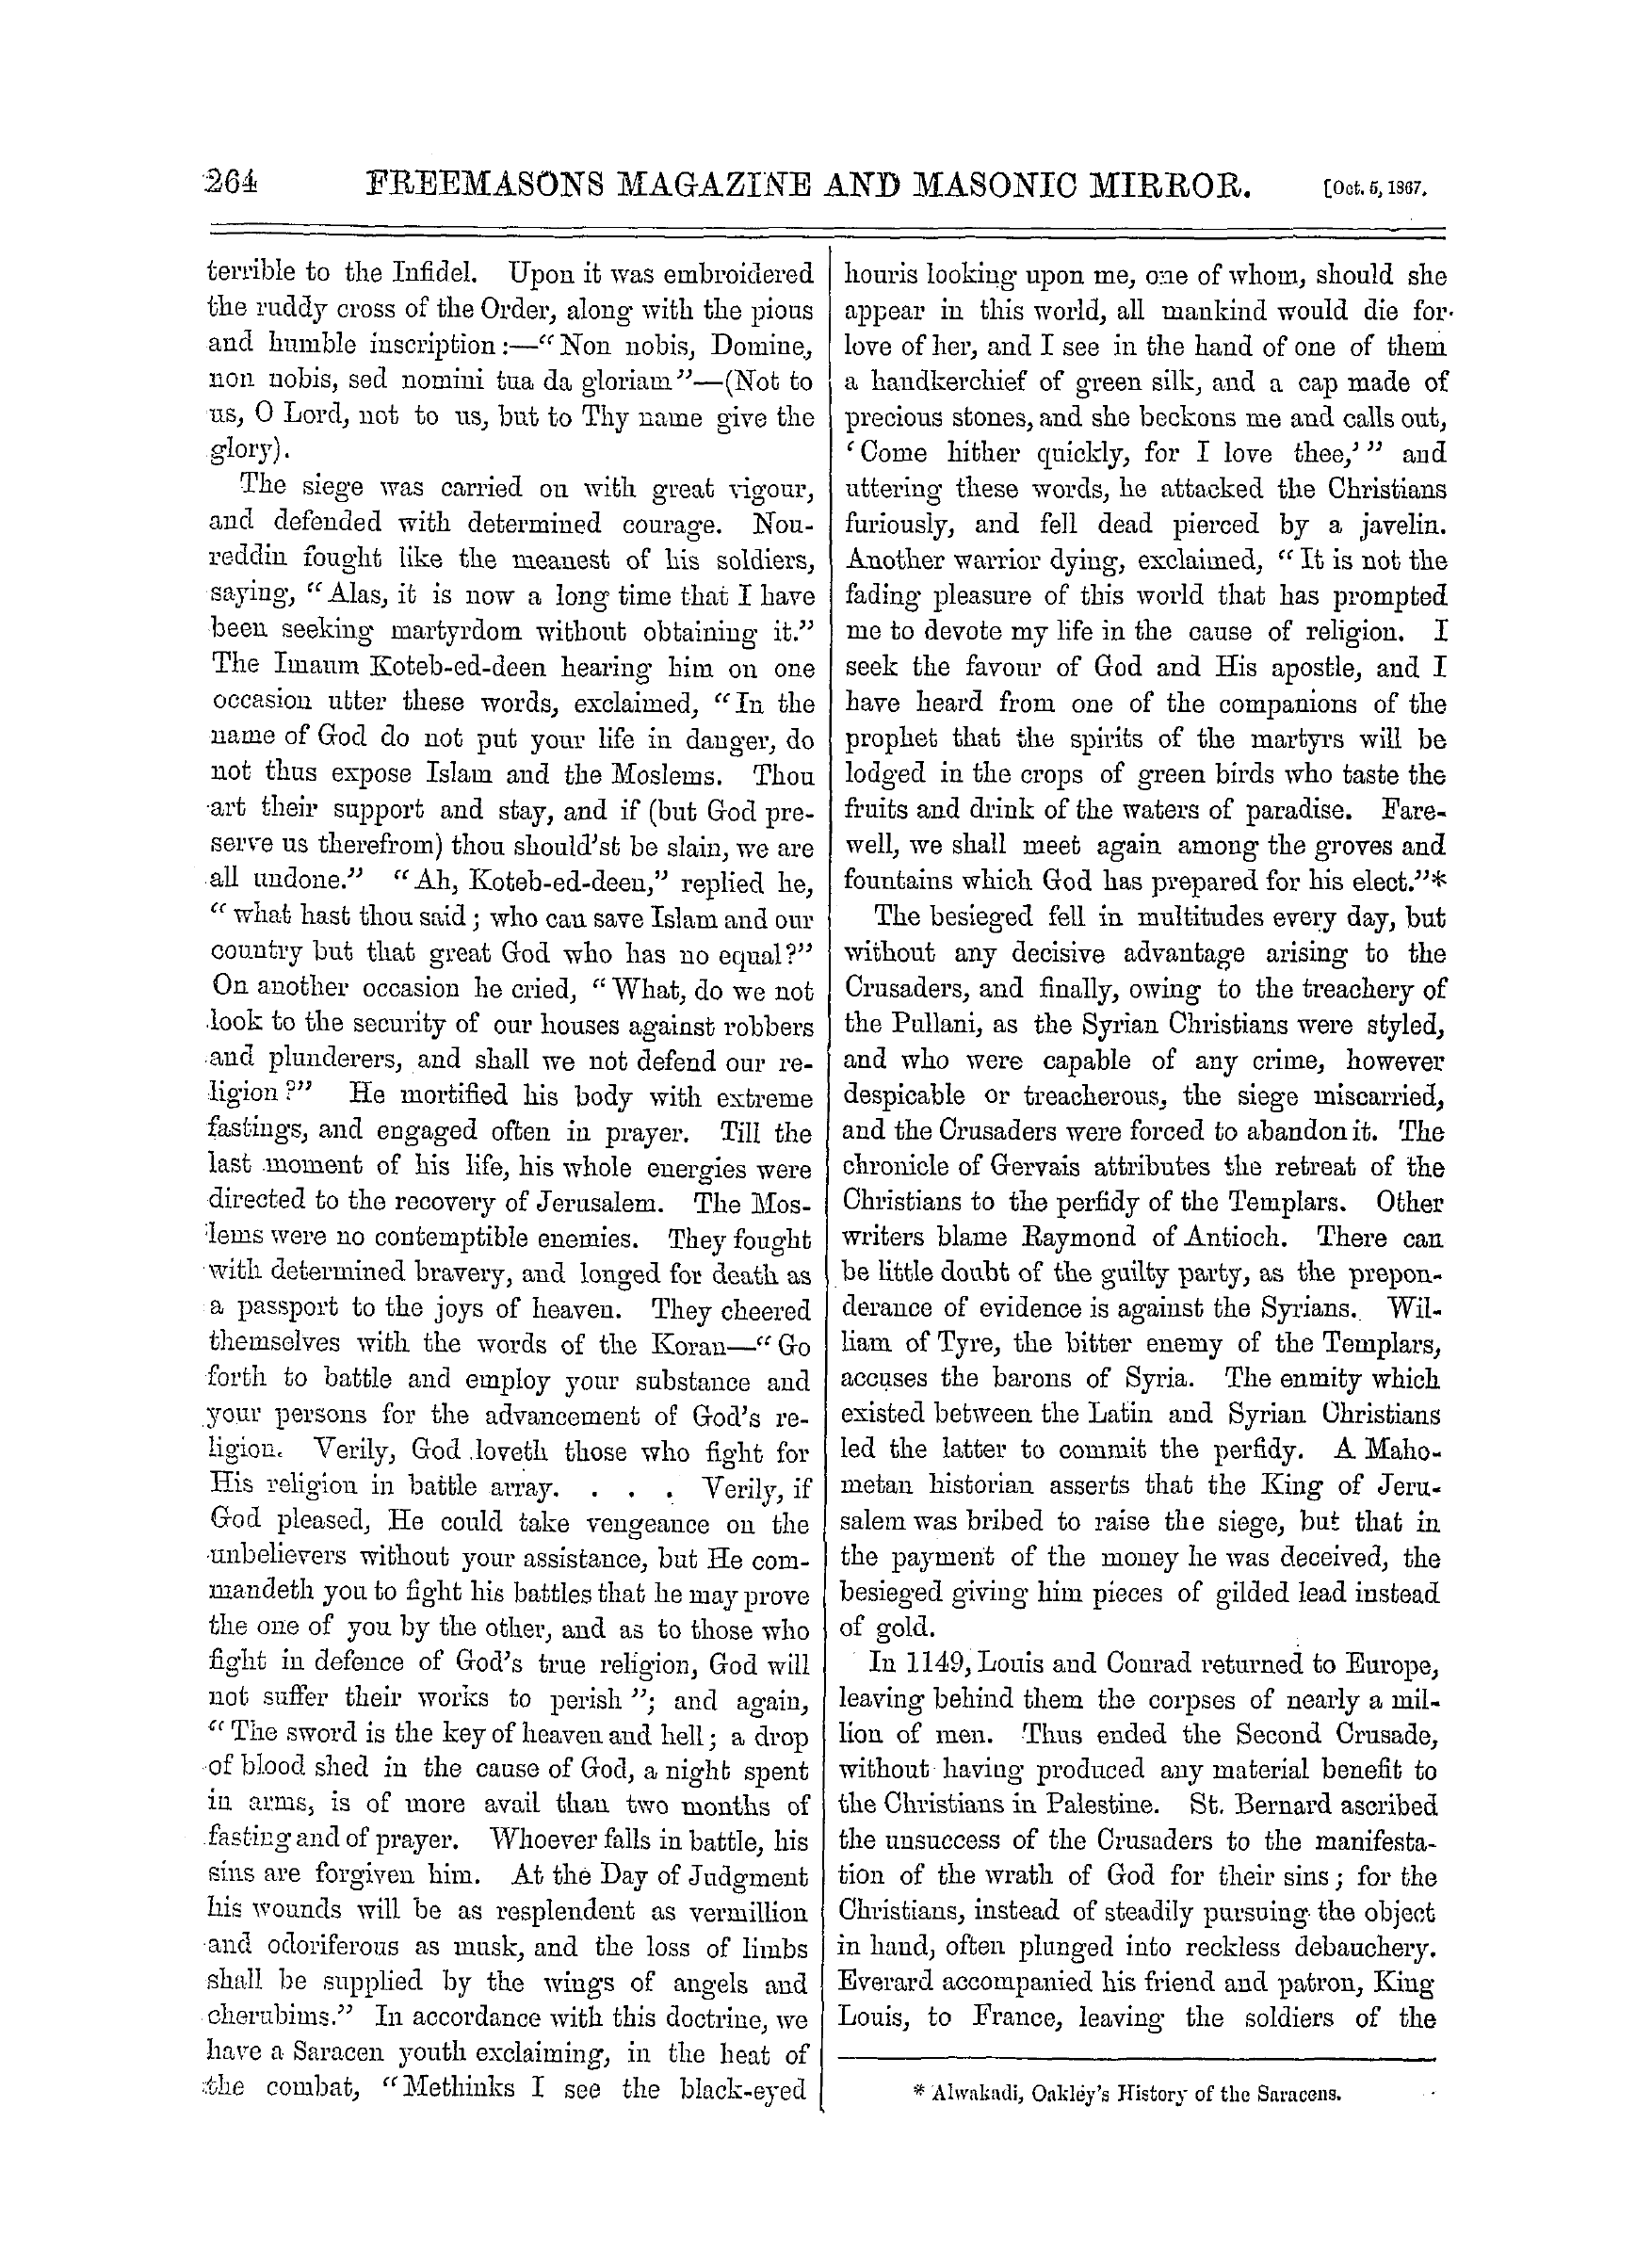 The Freemasons' Monthly Magazine: 1867-10-05: 4